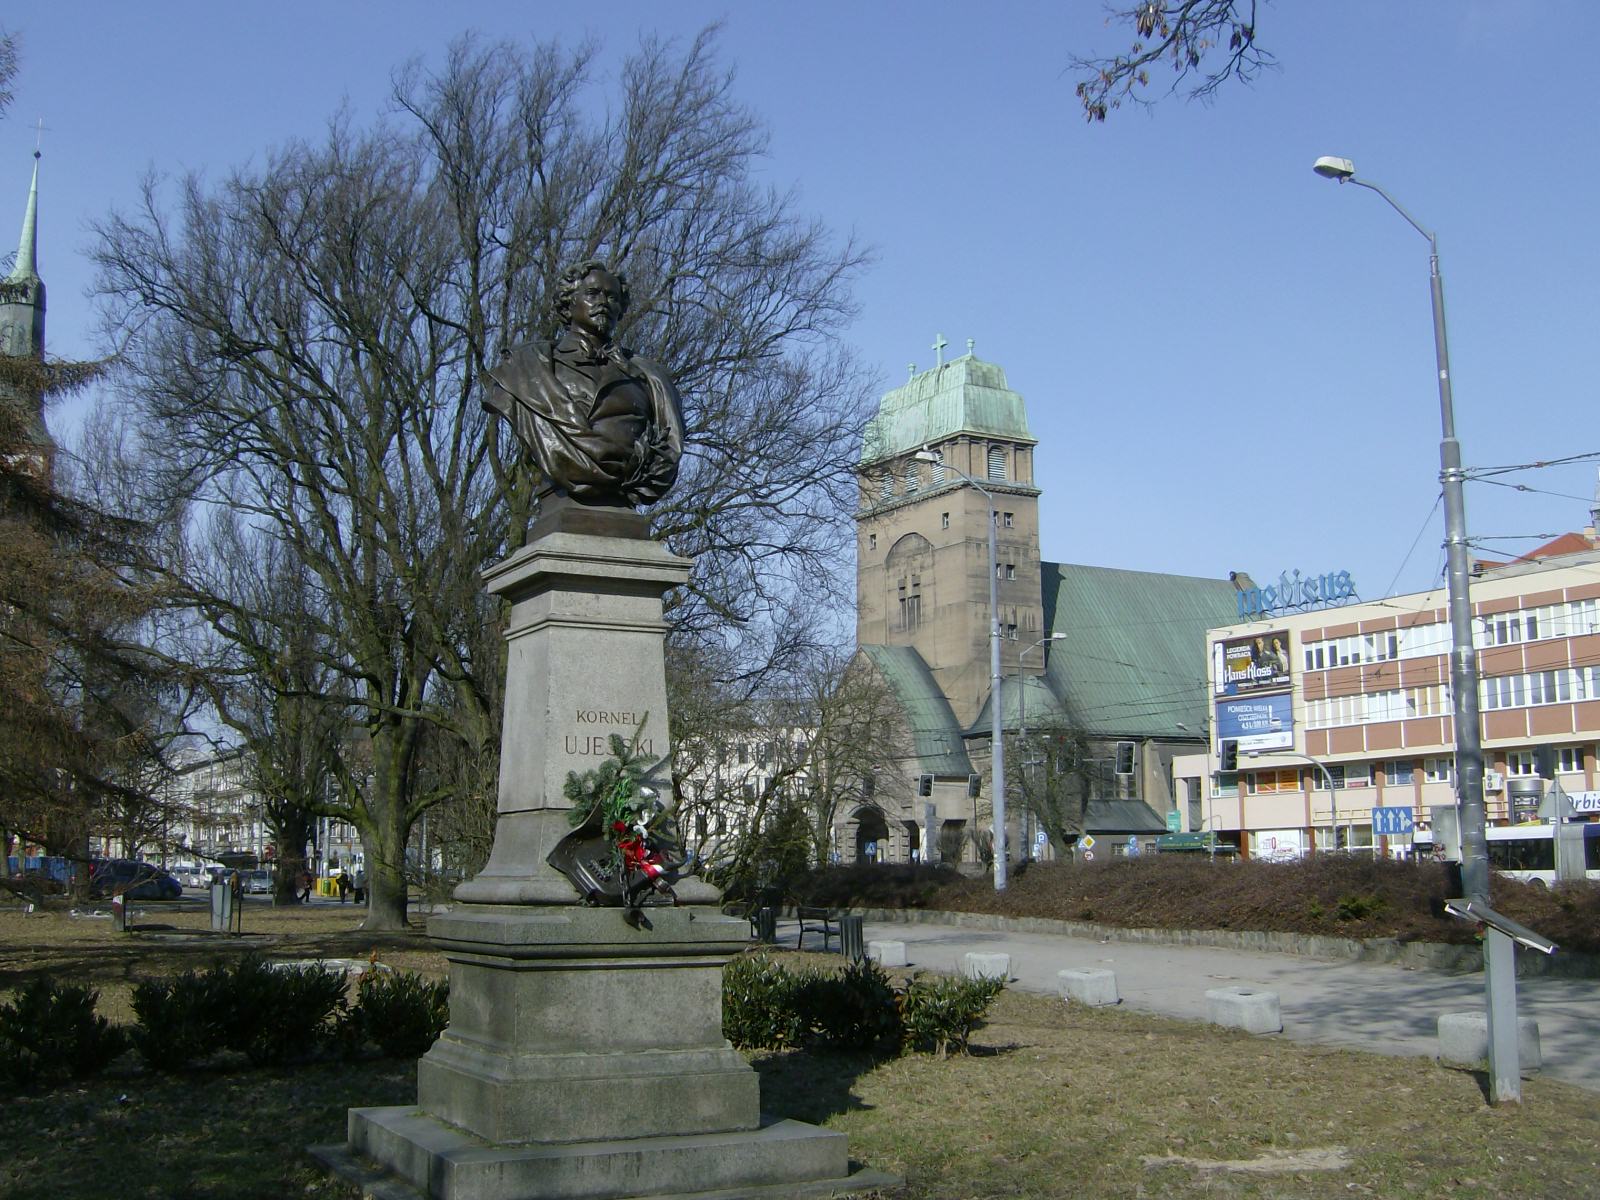 Farbfoto: Das Denkmal zur Erinnerung an den polnischen Schriftsteller Kornel Ujejski in Stettin in Polen im März des Jahres 2012. Fotograf: R.I.